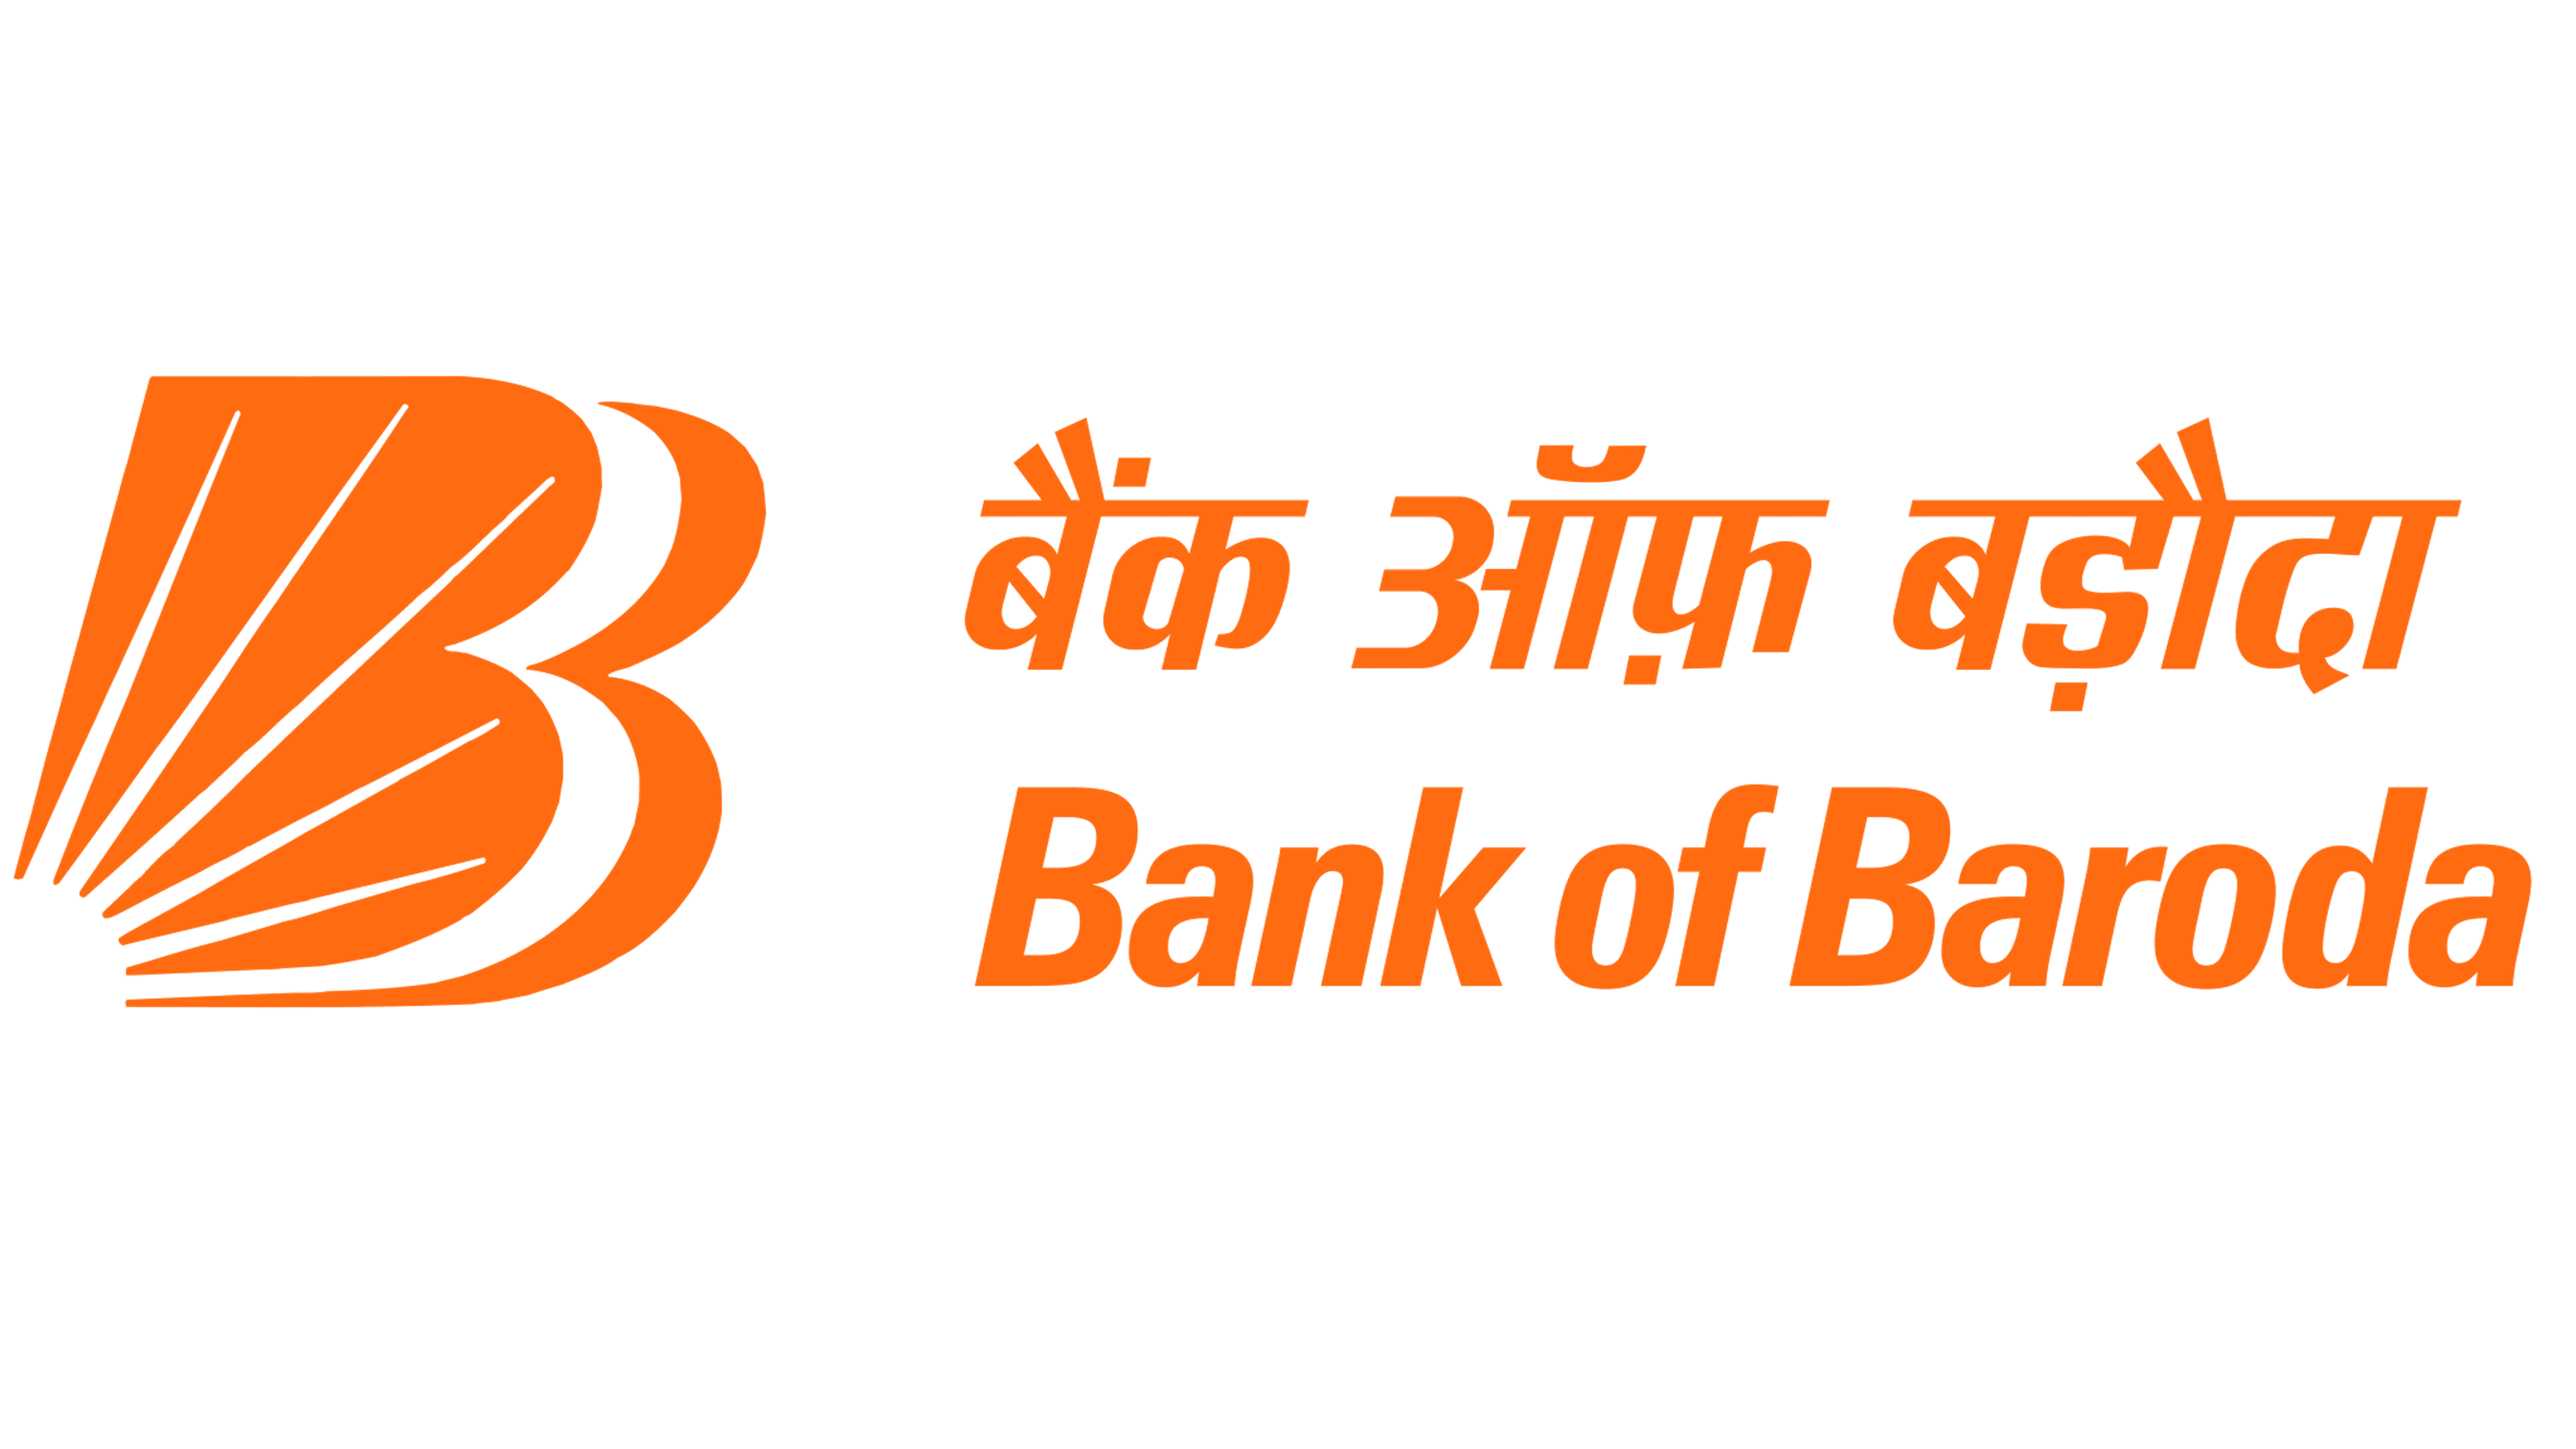 Bank-of-Baroda-logo